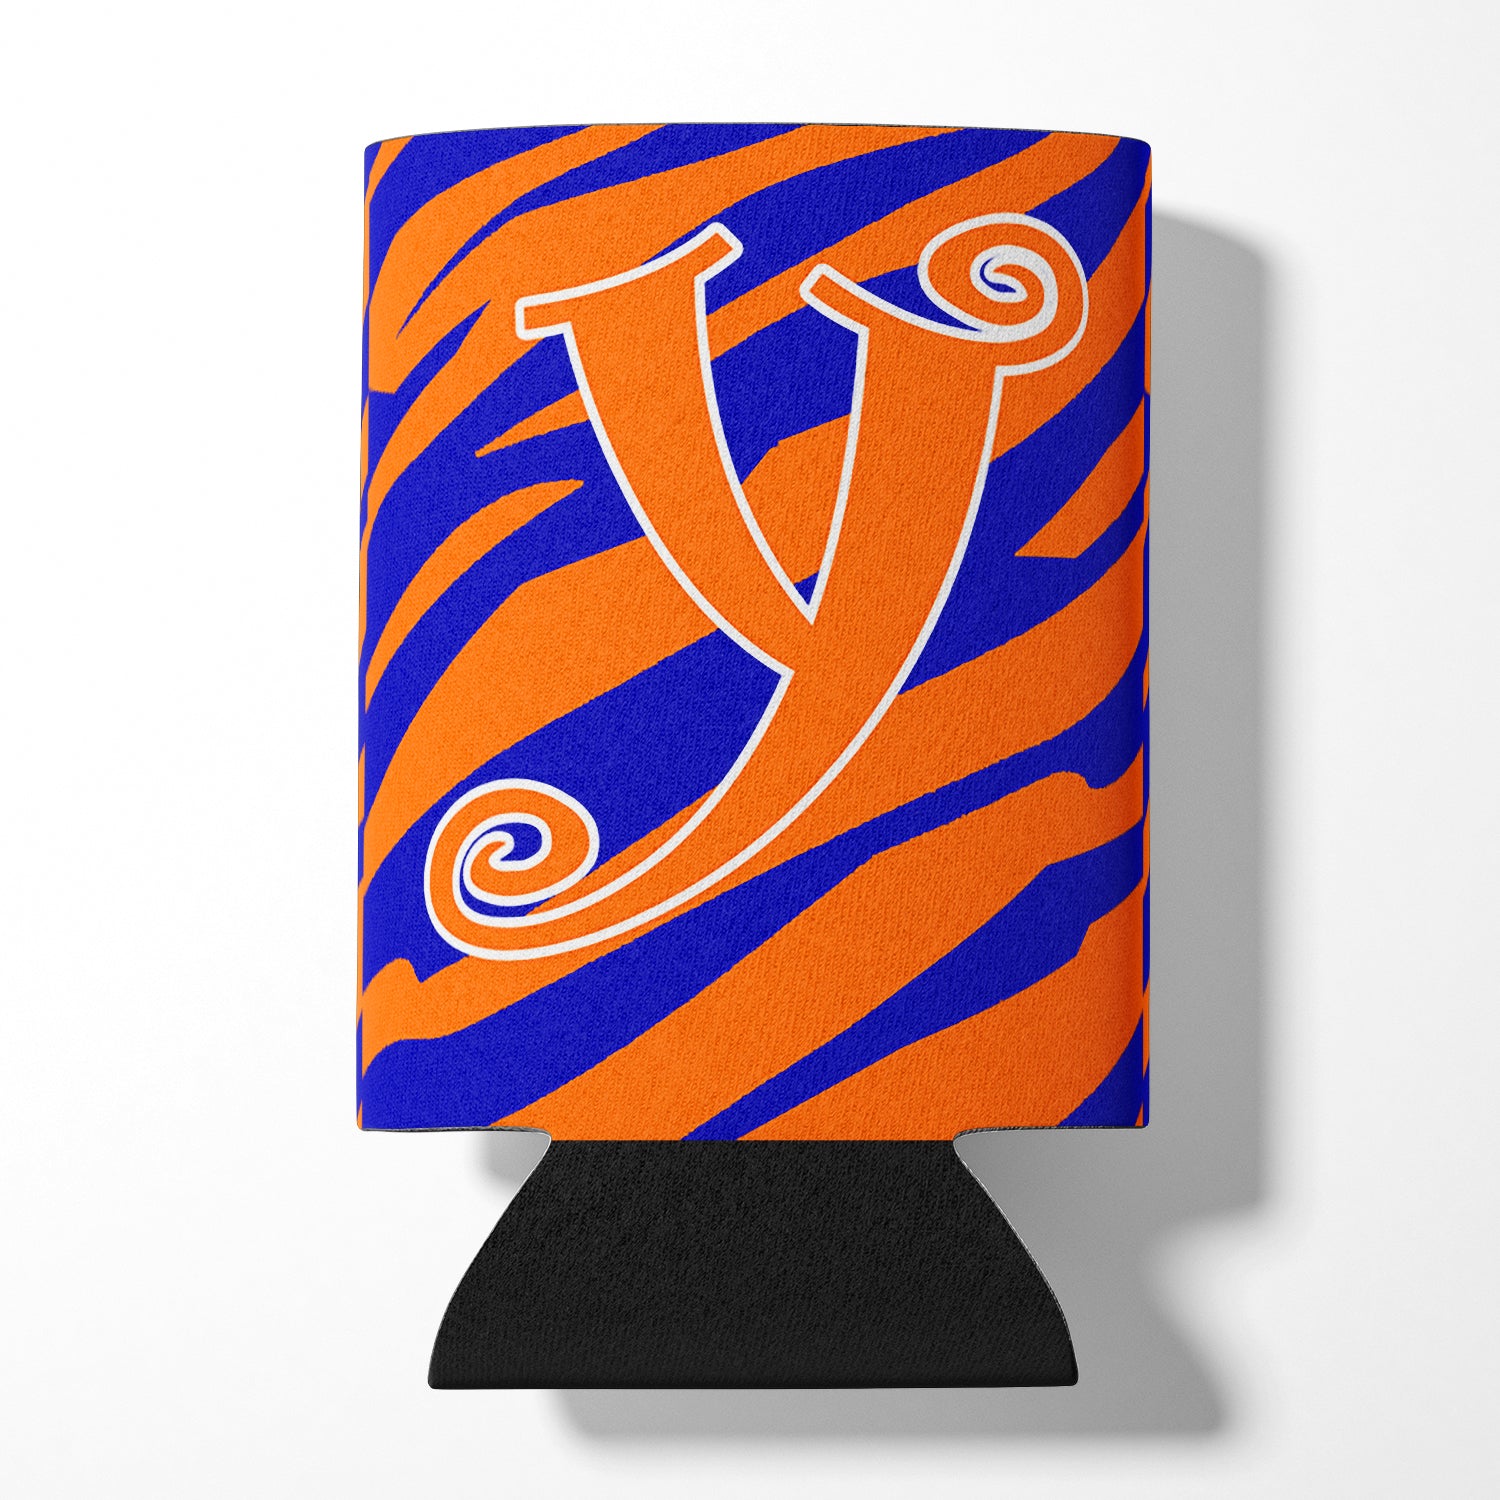 Letter Y Initial Monogram - Tiger Stripe Blue and Orange Can Beverage Insulator Hugger.